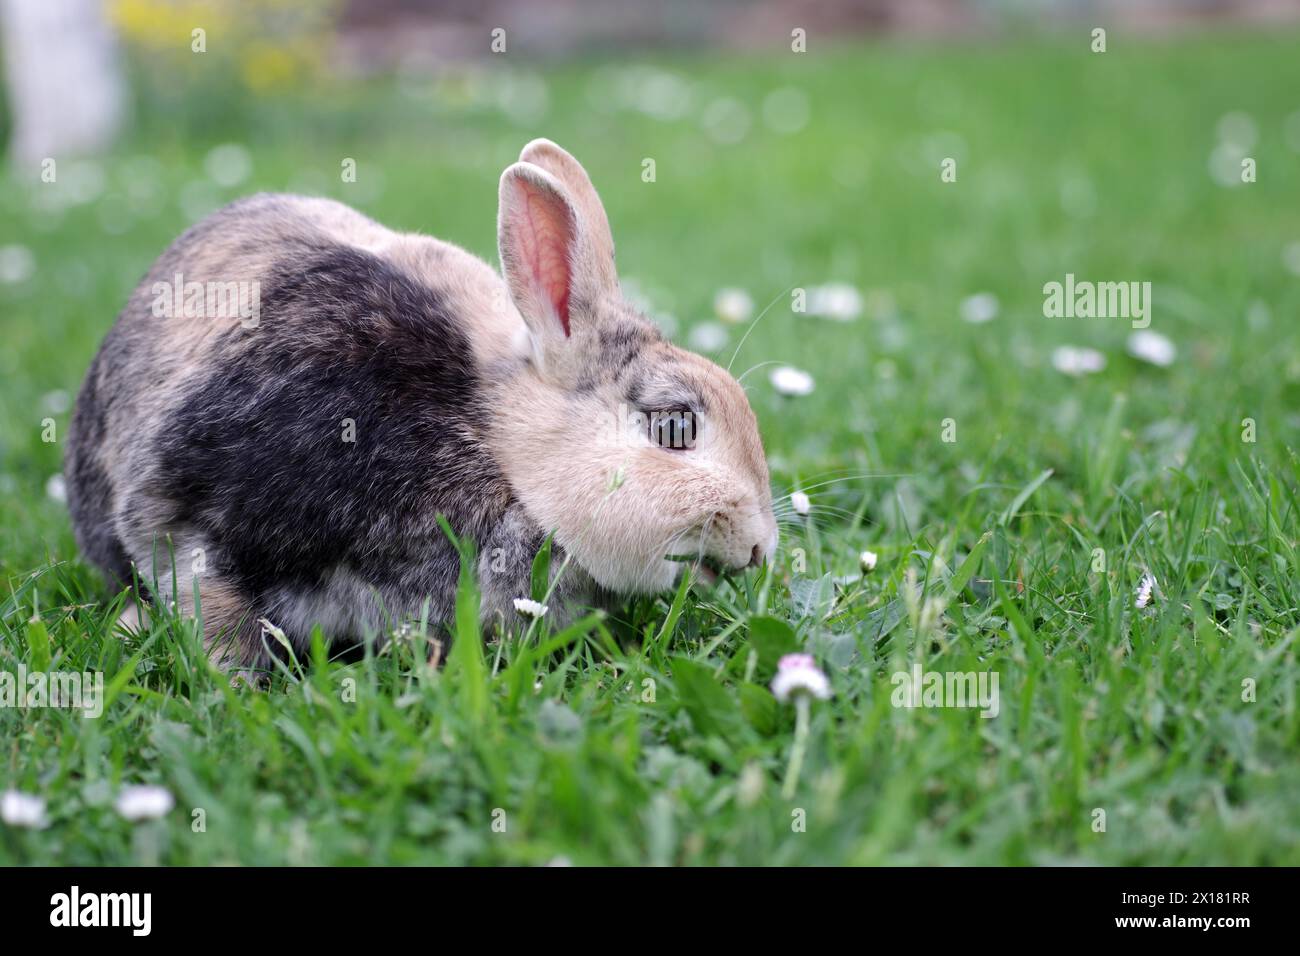 Kaninchen (Oryctolagus cuniculus domestica), Haustier, Gras, Essen, Nahaufnahme eines Kaninchens auf der Wiese. Das Tier frisst an frischem Gras Stockfoto